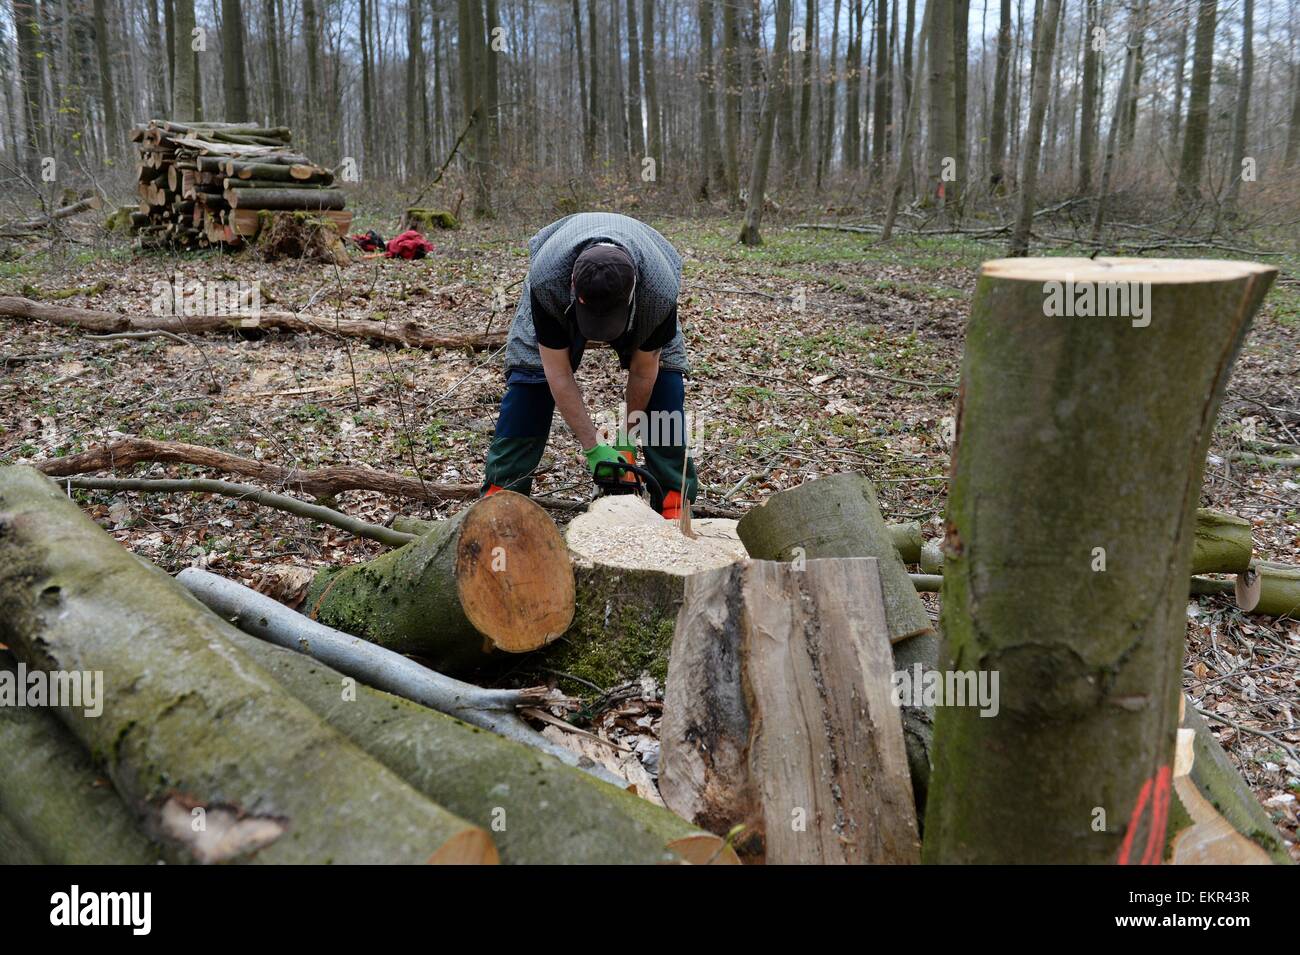 Macchinoso nella foresta, Germania, vicino alla città di Pöhlde, 11. Aprile 2015. Foto: Frank Maggio/picture alliance Foto Stock